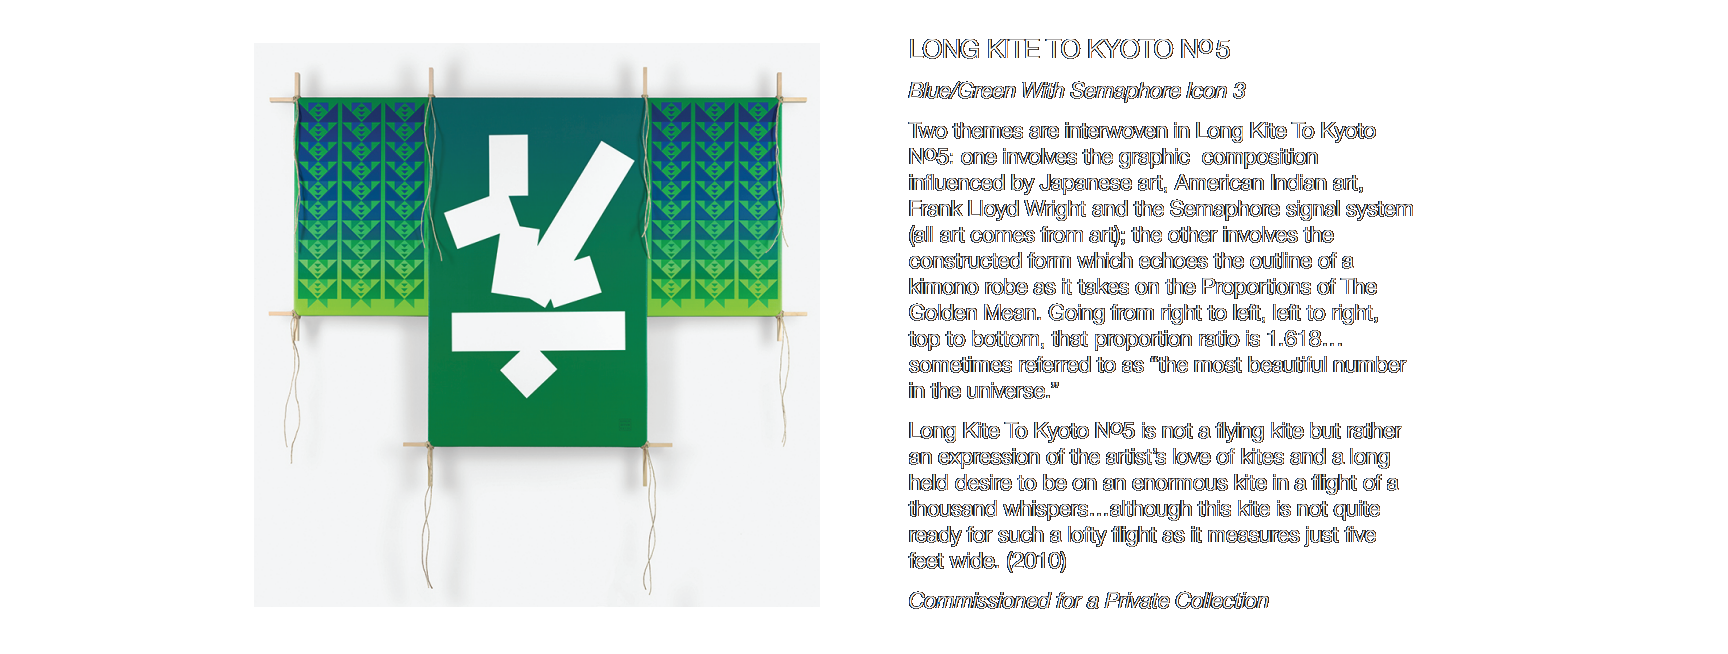 LONG KITE TO KYOTO No5